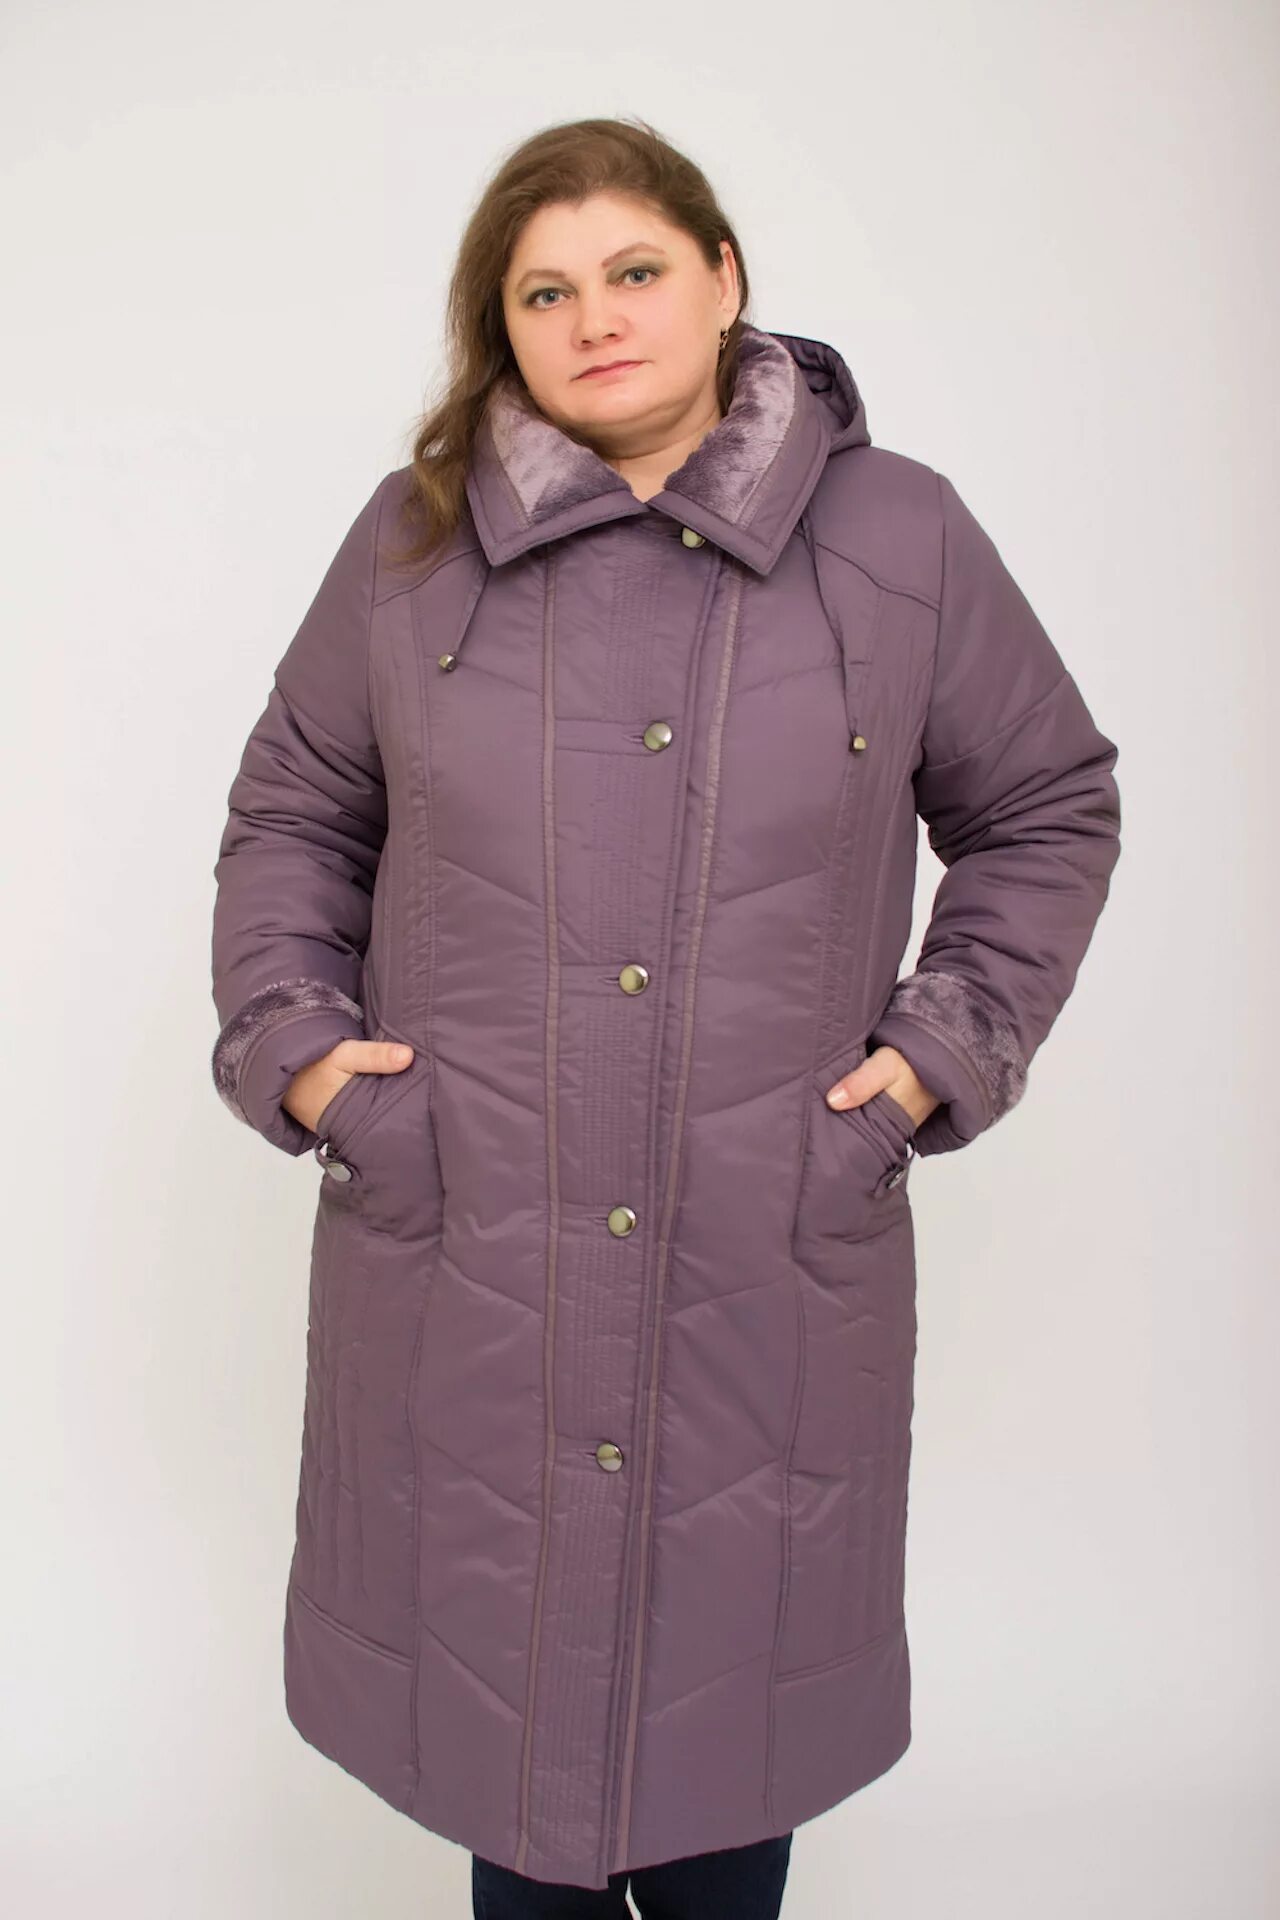 Куртки больших размеров недорого. Mishel утепленная куртка 60 размер. Женские пуховики больших размеров. Зимняя куртка женская большого размера. Куртки и пуховики больших размеров женские.